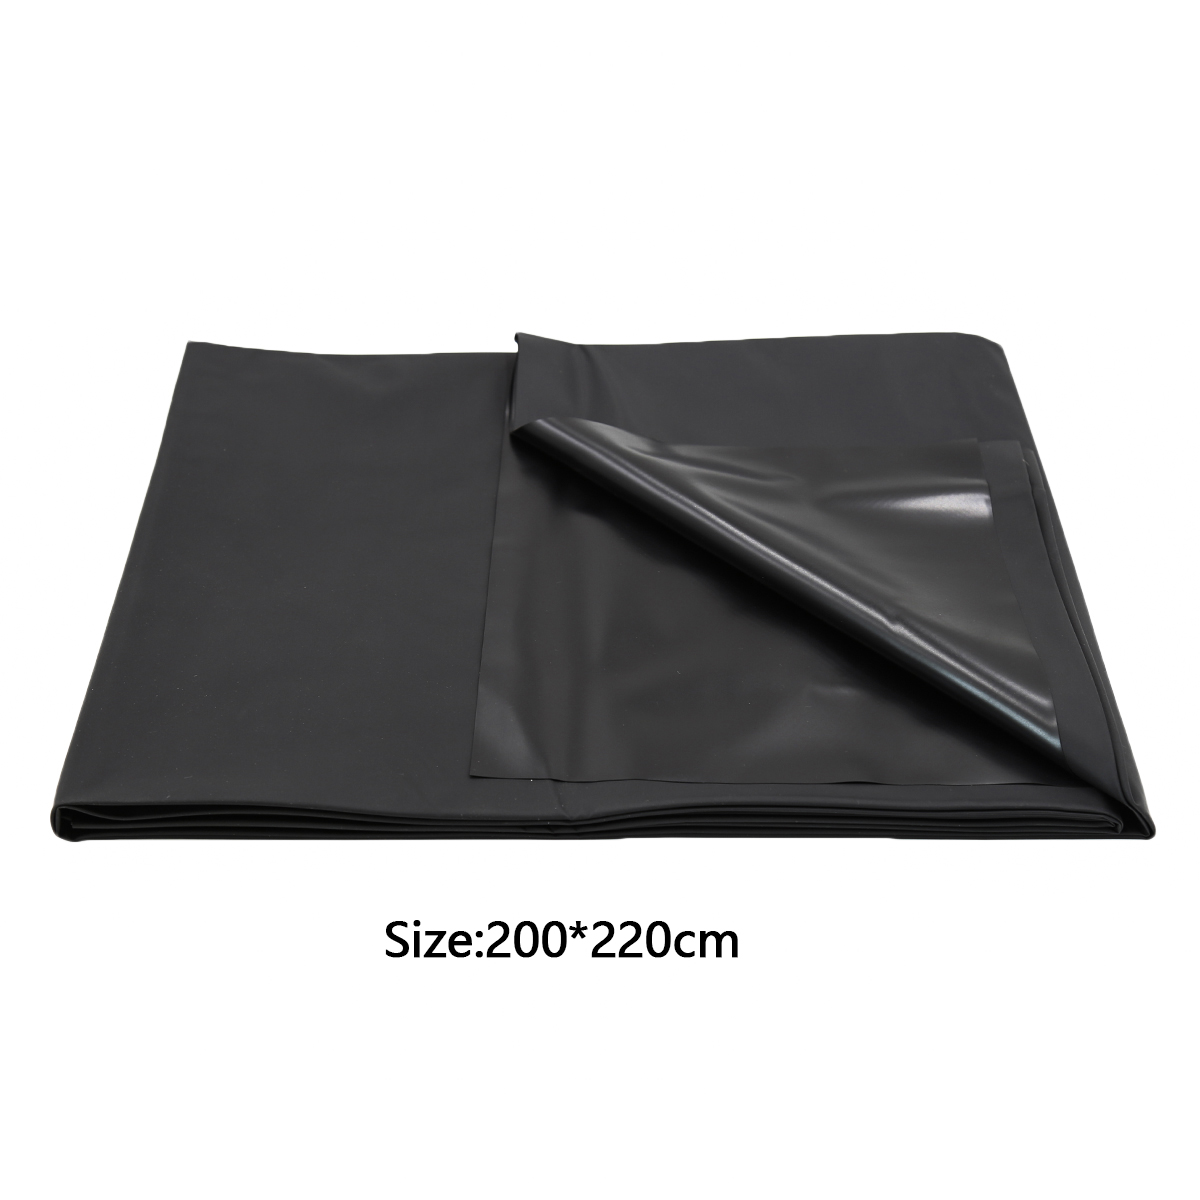 Bed-Sheet-Cover-Black-OPR-321039-1